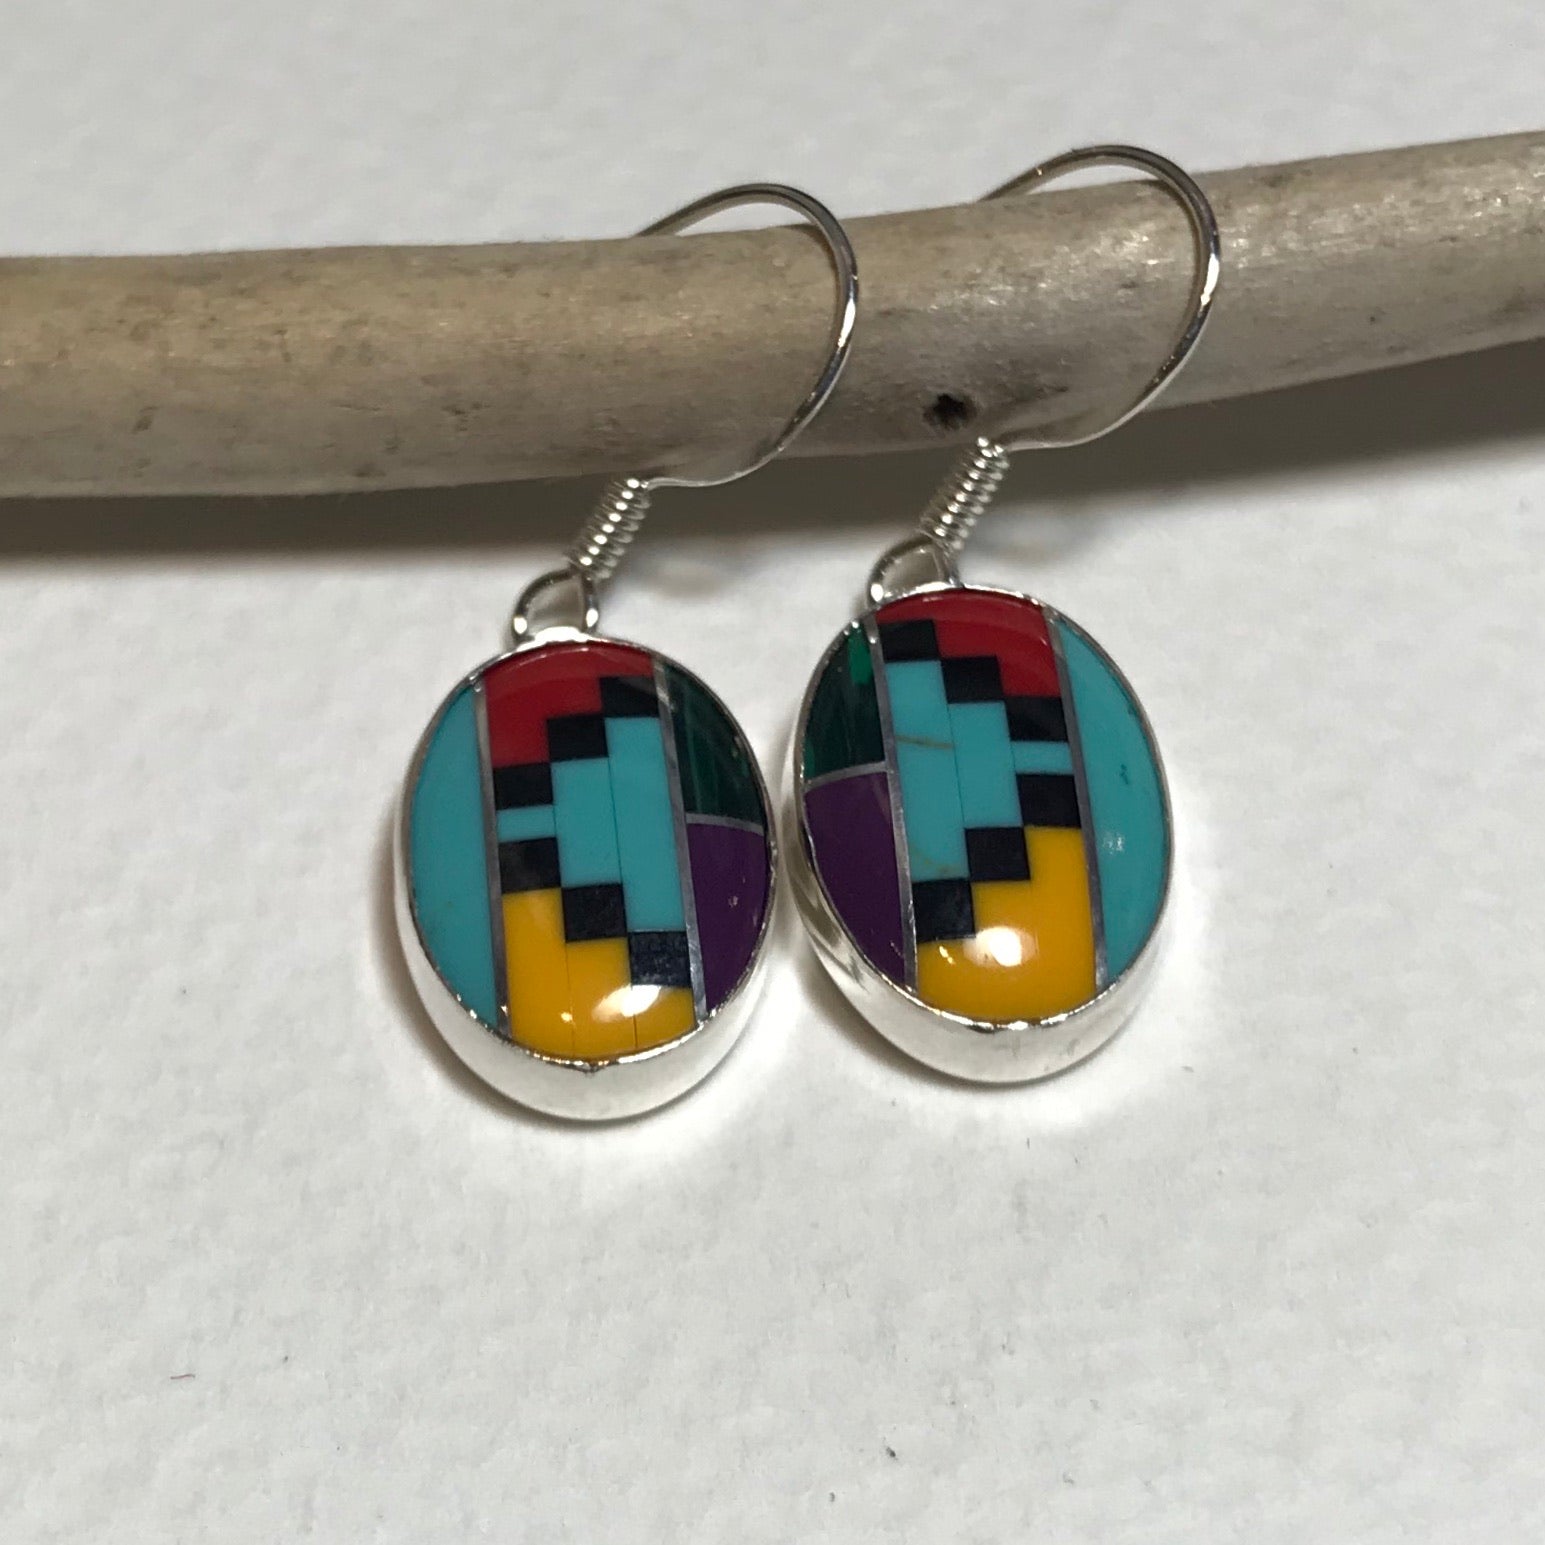 Oval Aztec Earrings - The Nancy Smillie Shop - Art, Jewellery & Designer Gifts Glasgow